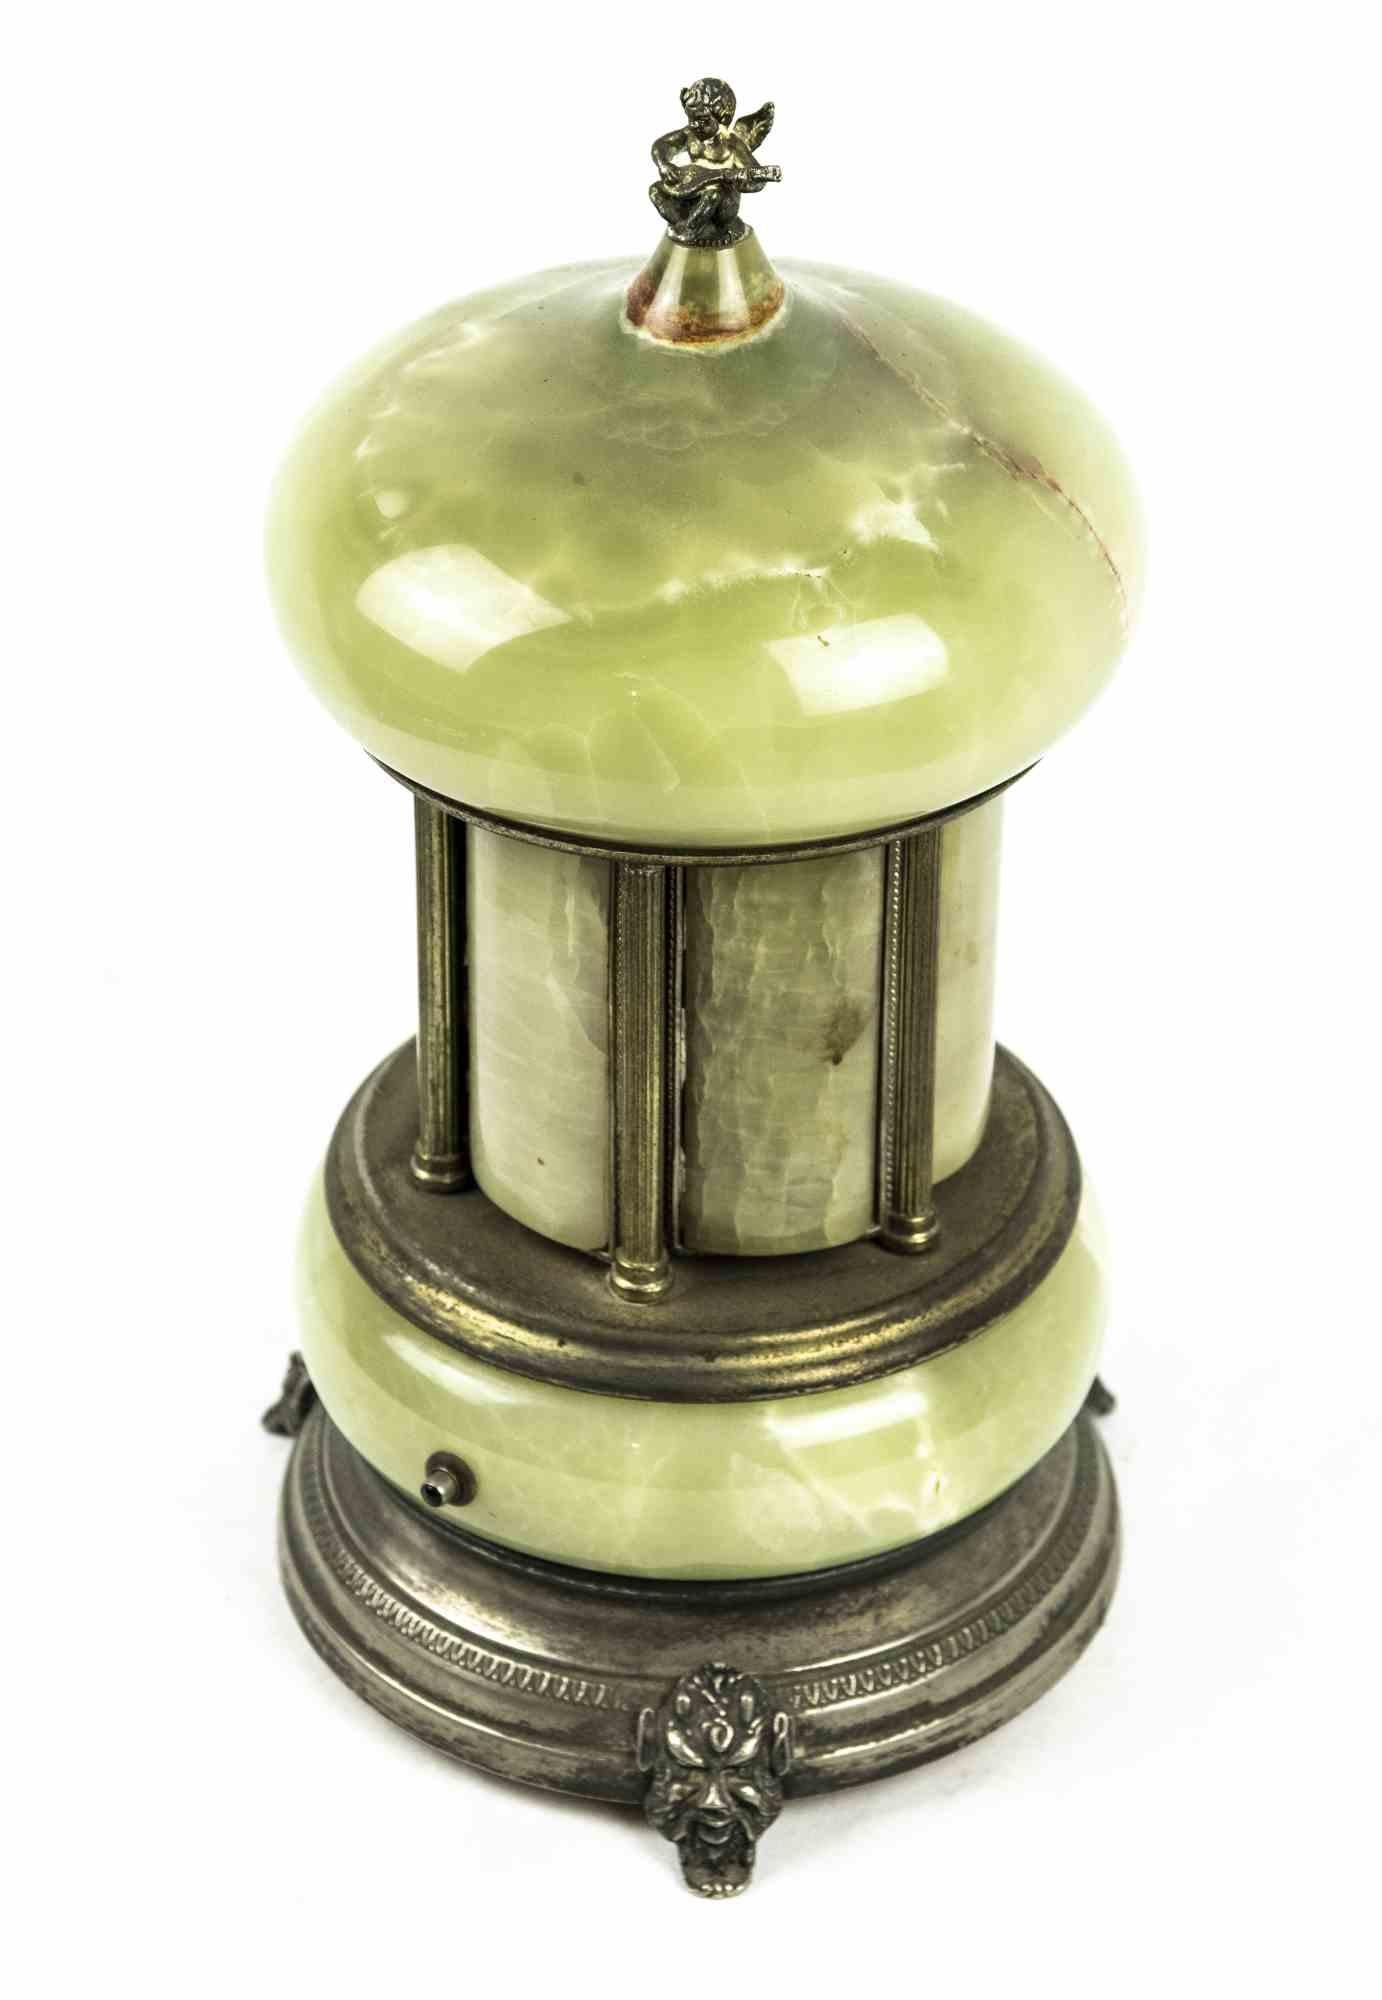 Das Glockenspiel aus Nephrit und Metall ist ein originelles Dekorationsobjekt aus den 1970er Jahren.

Ein einzigartiges Objekt, das vollständig aus Nephrit gefertigt ist und mit einem Sockel und Einsätzen aus Silberblech versehen ist. Ein kleiner